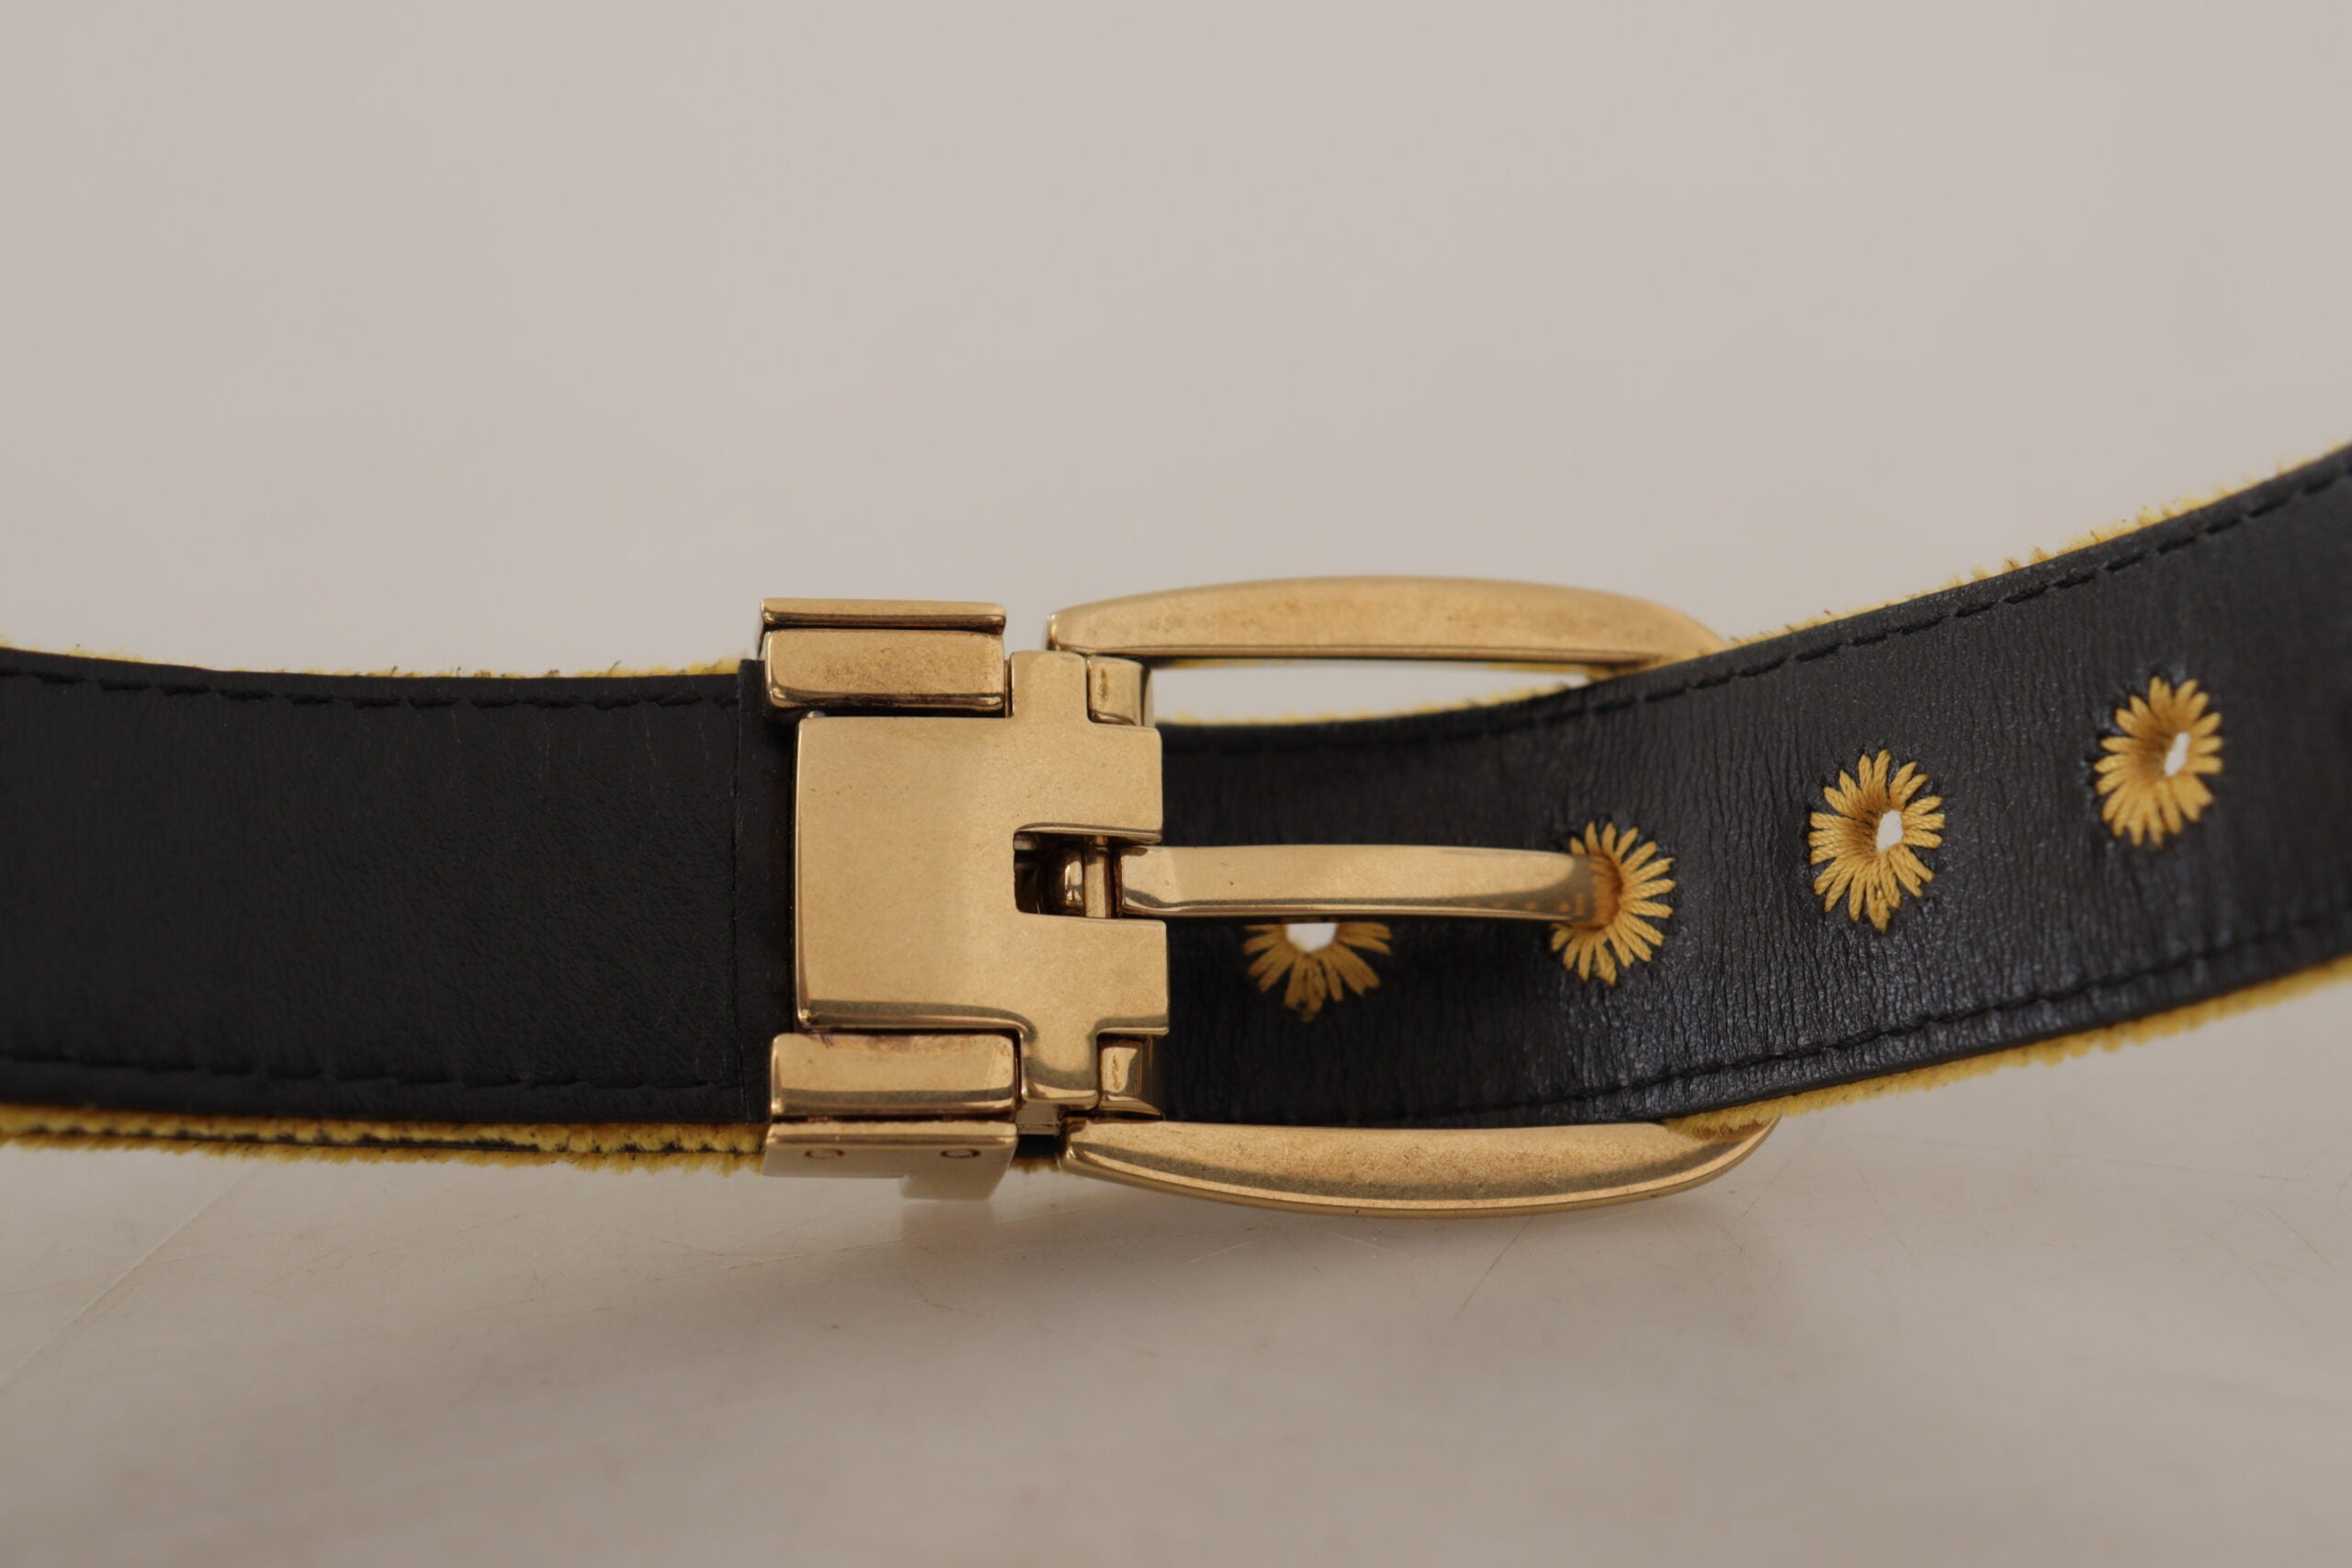 Dolce & Gabbana Elegant Velvet Gold Buckle Women's Belt